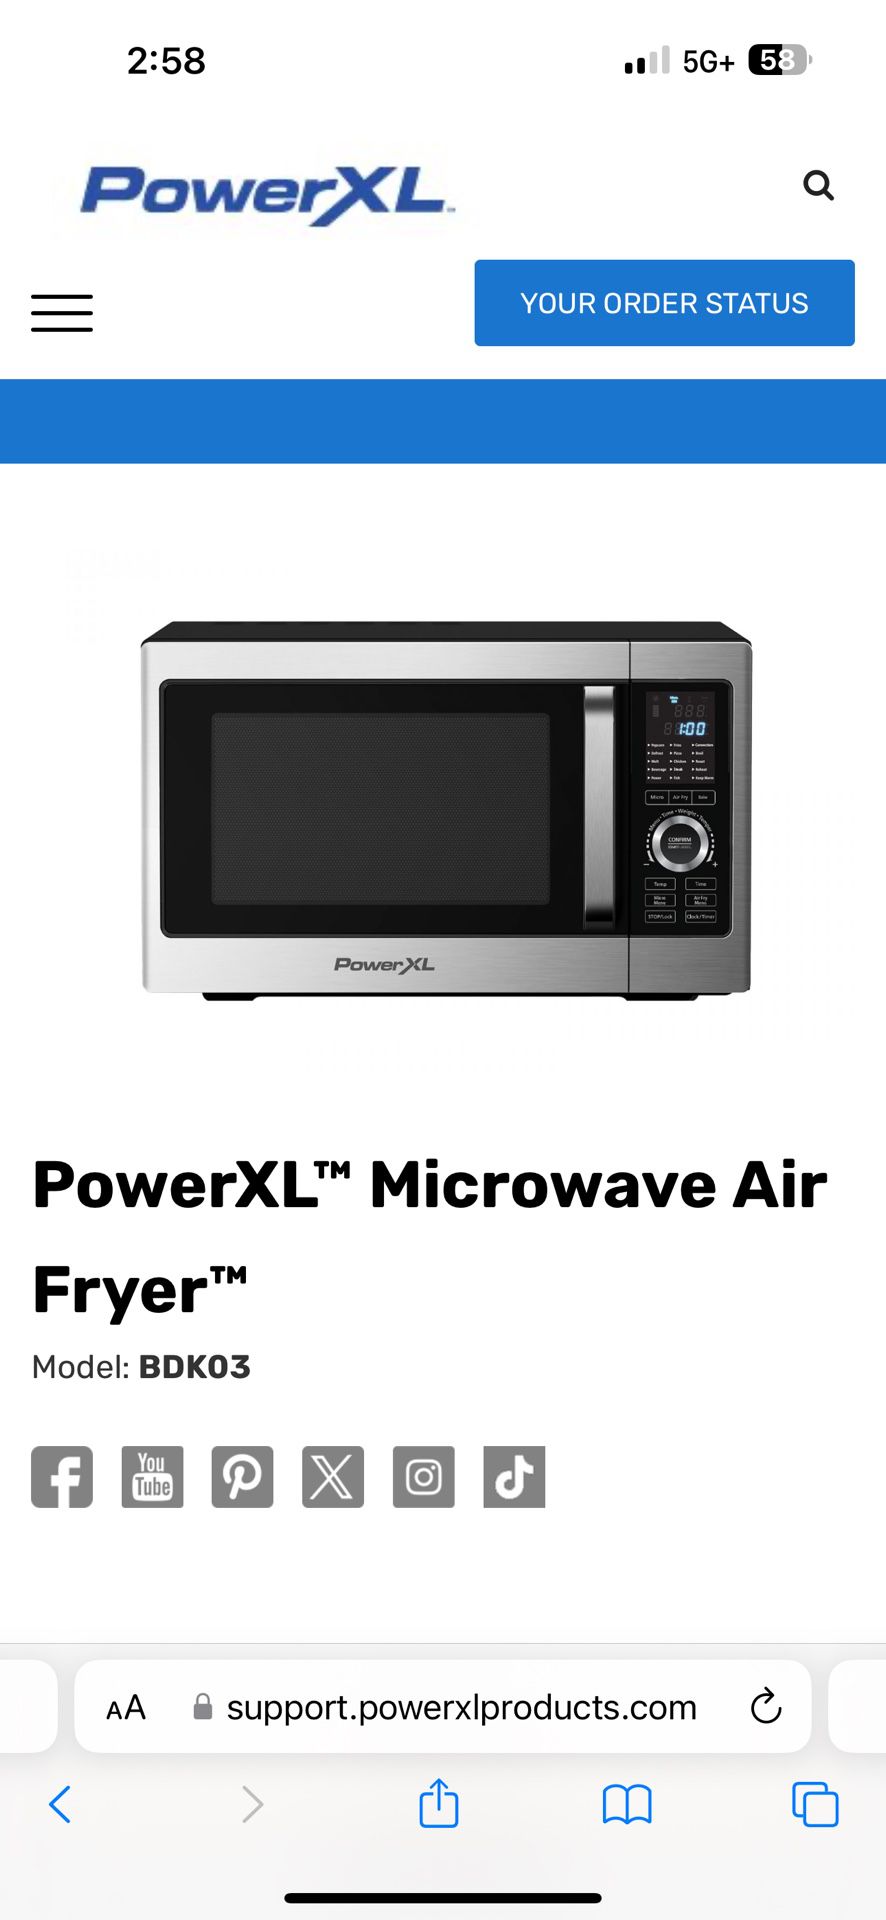 PowerXL Microwave Air Fryer